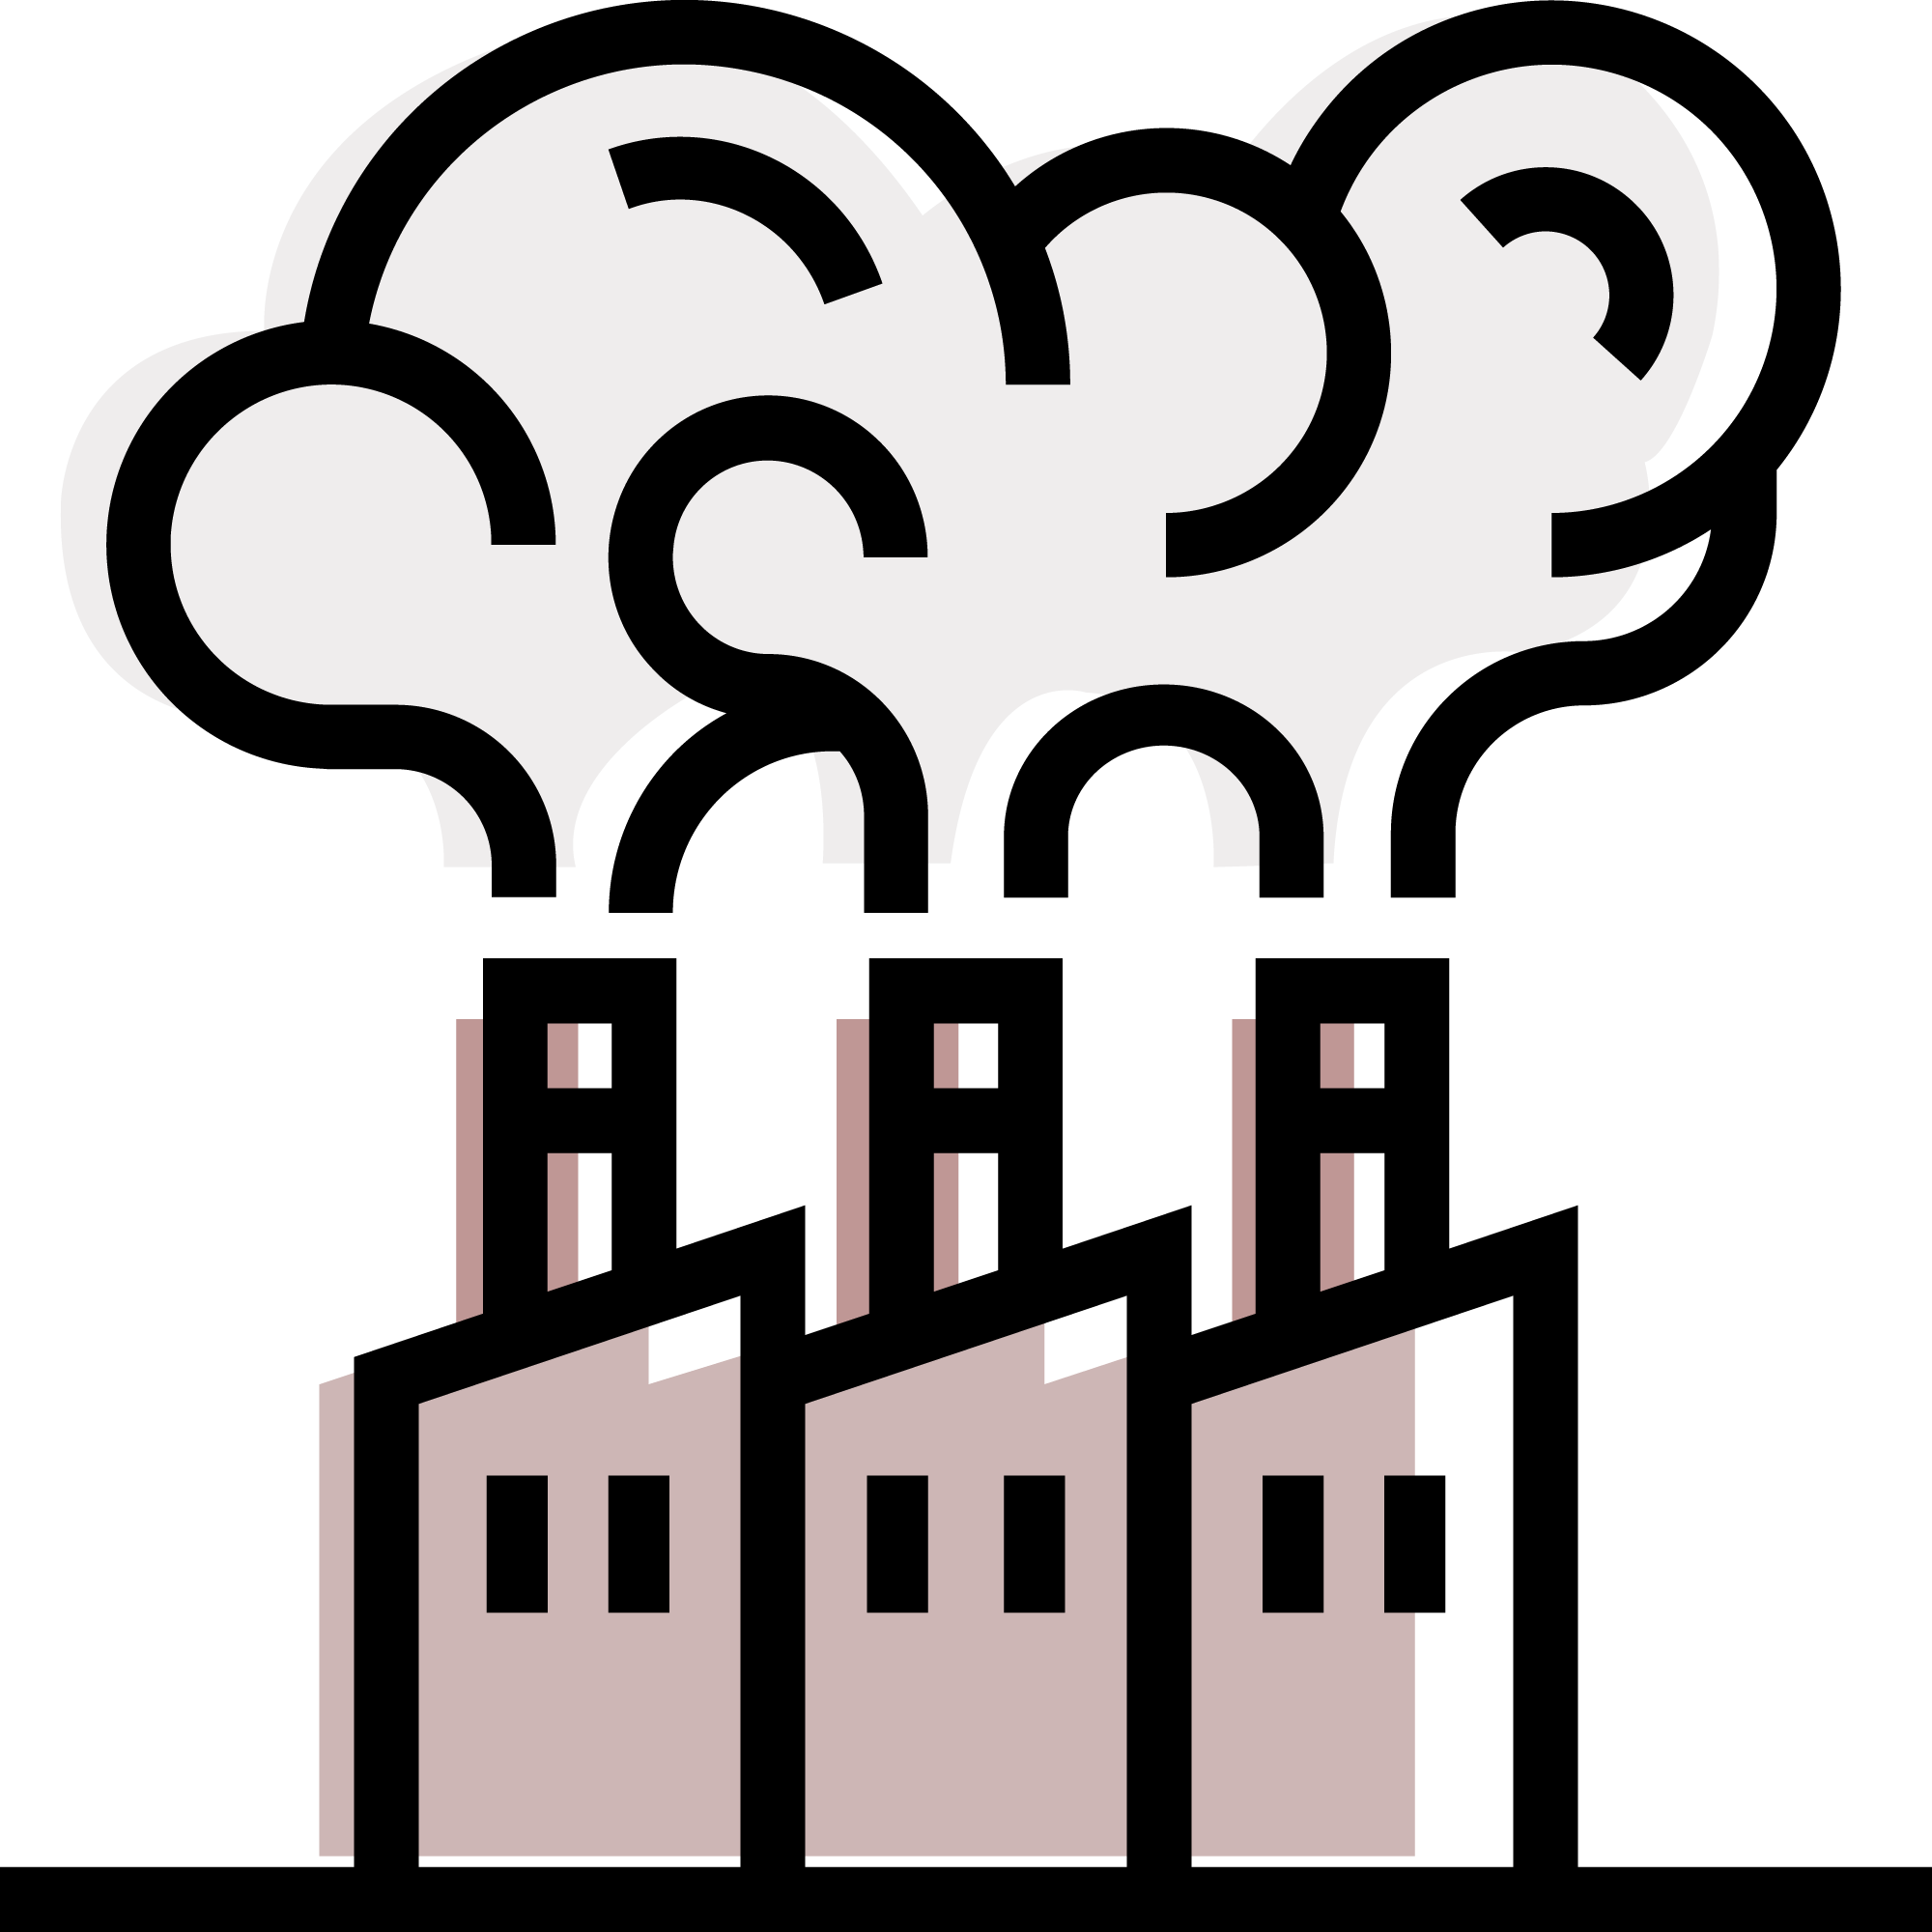 digitally drawn factory chimneys emitting gas